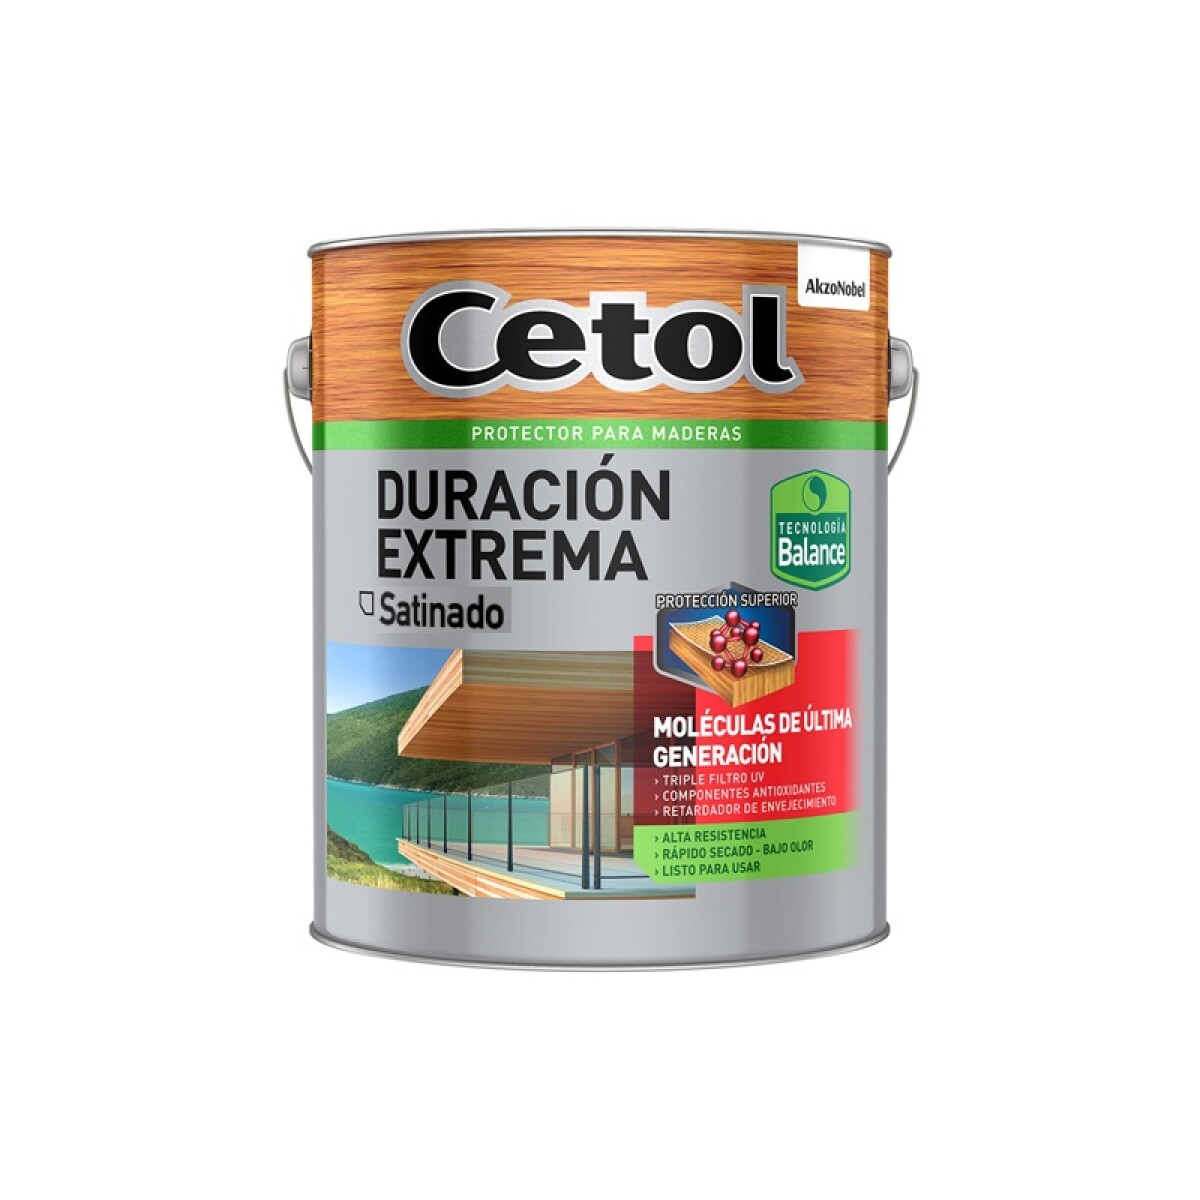 Cetol Duración Extrema 4L - Cedro 